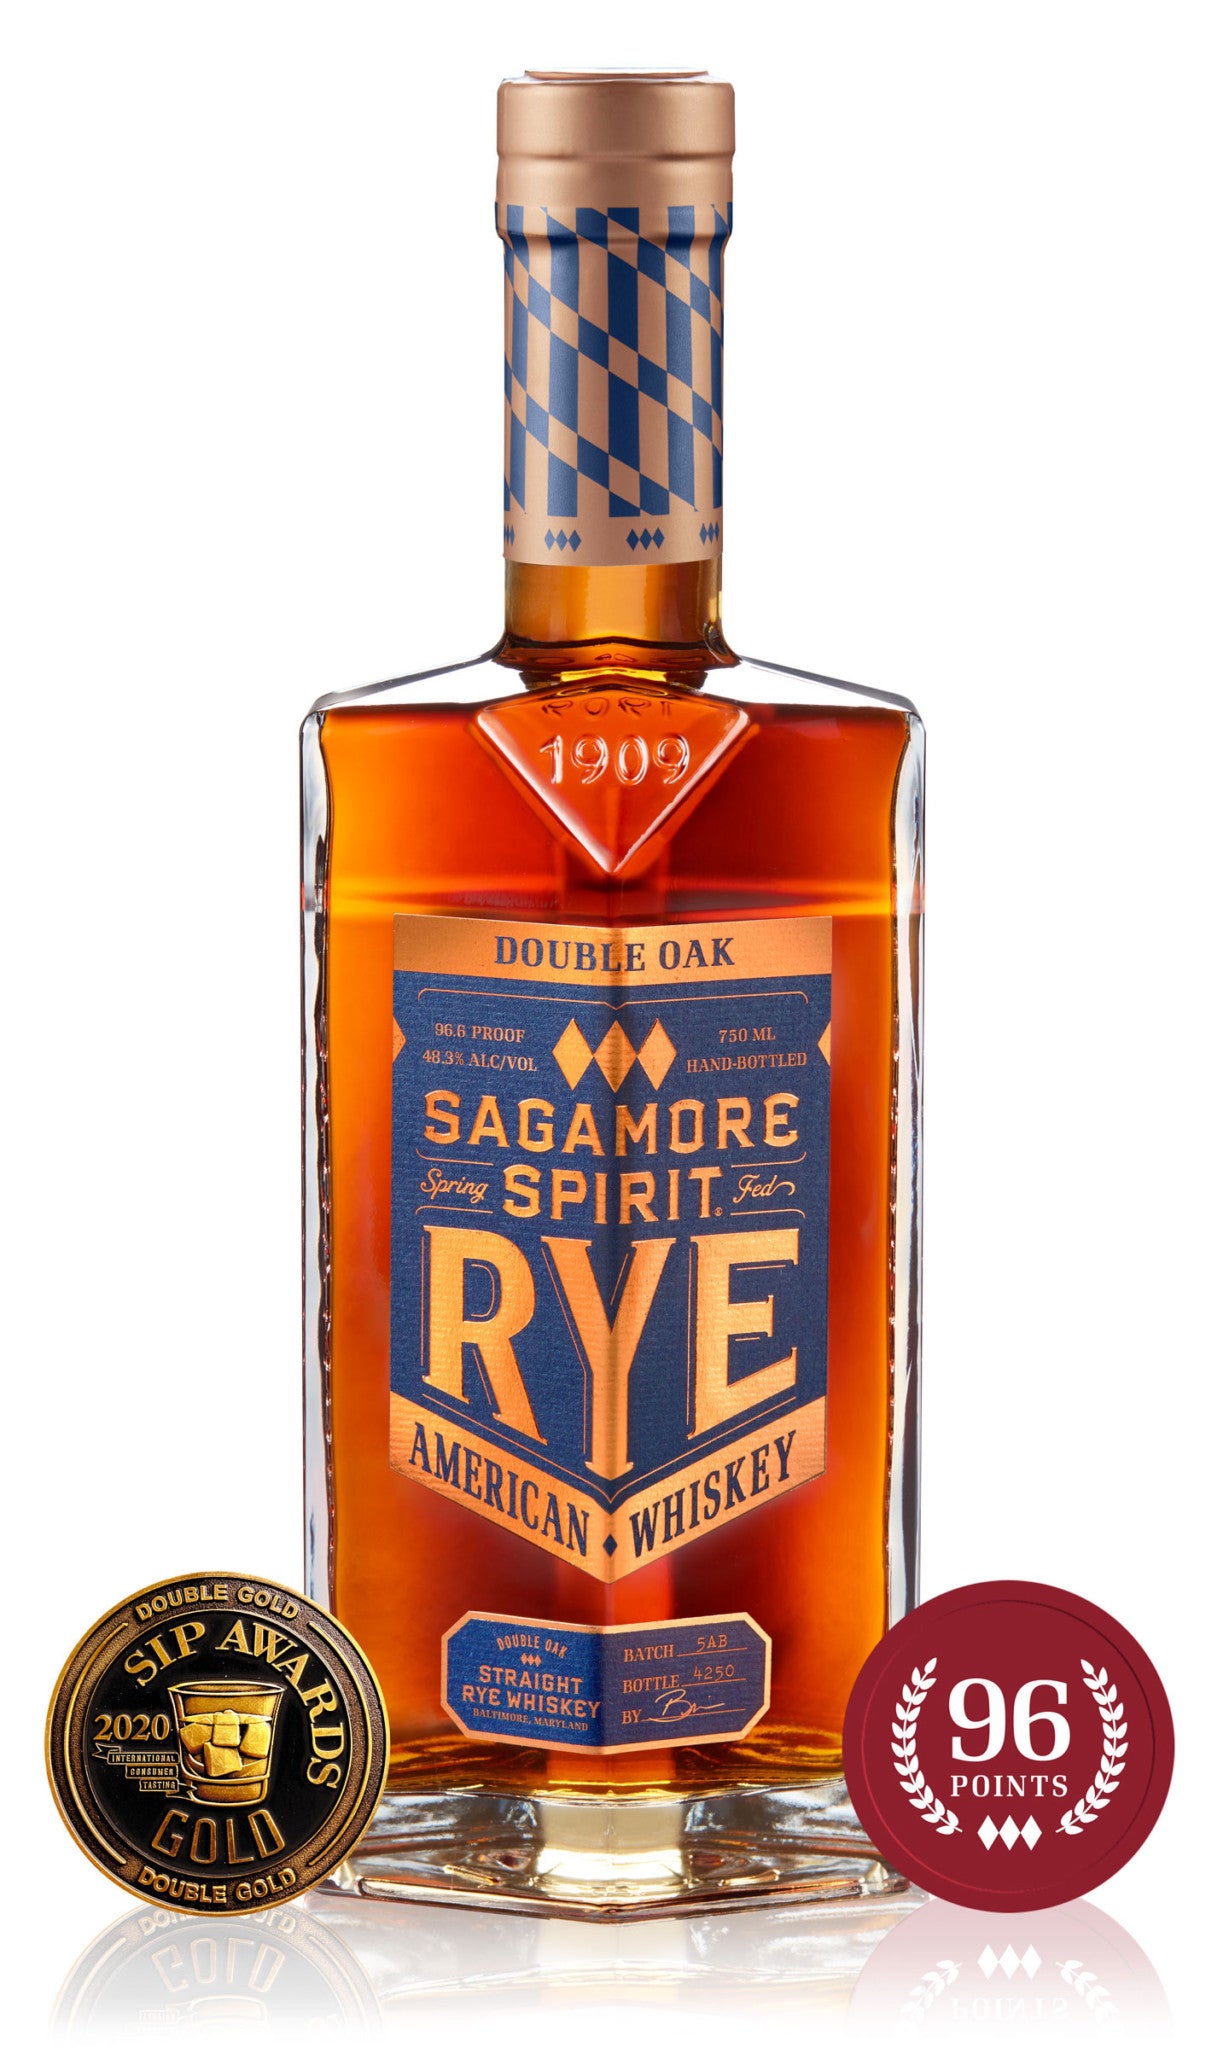 Sagamore Spirit Rye Double Oak 750ml